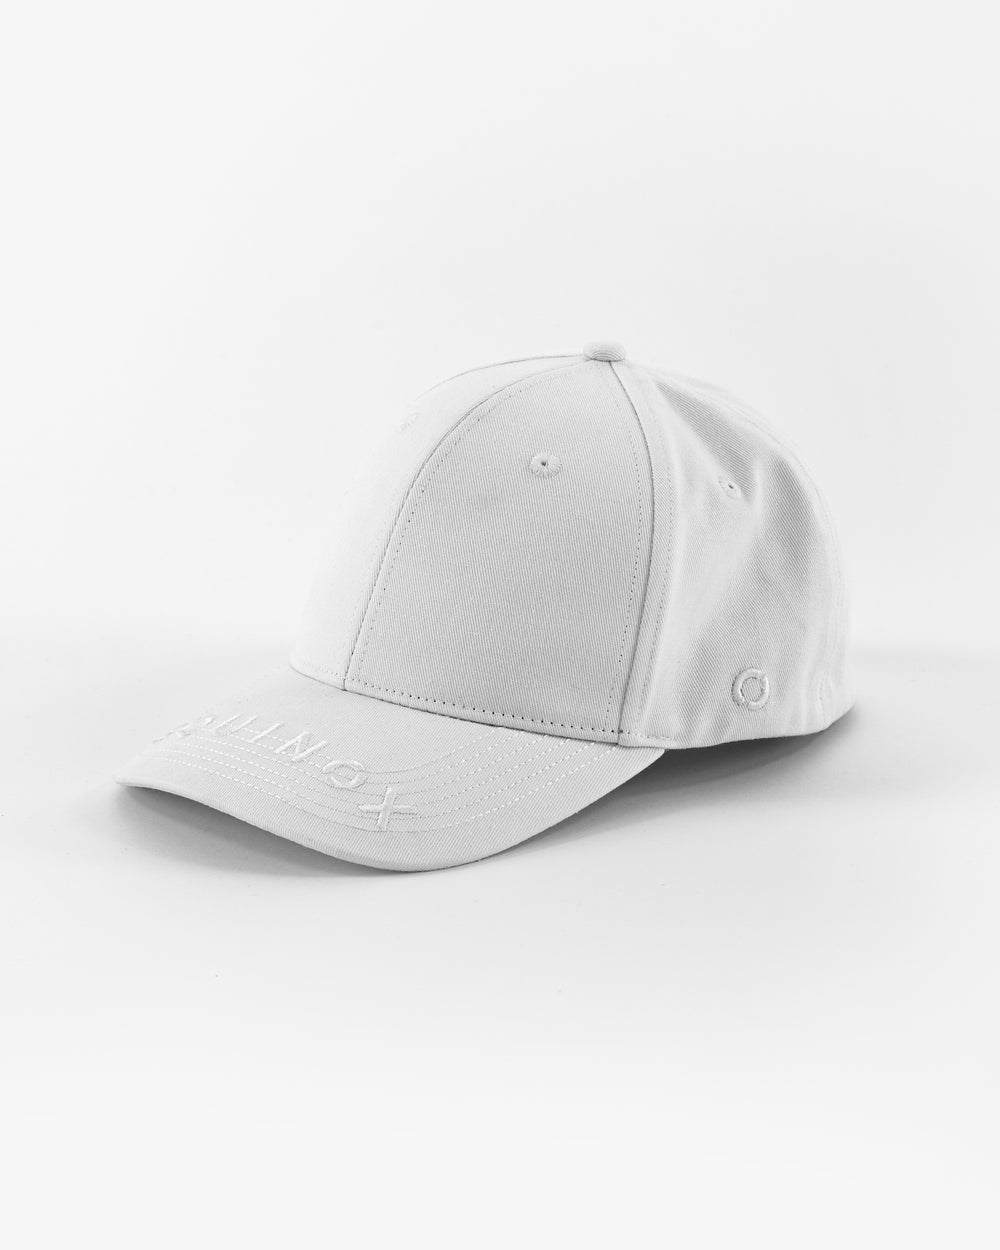 Equinox Fit Logo Hat – The Shop Equinox Visor Flex at